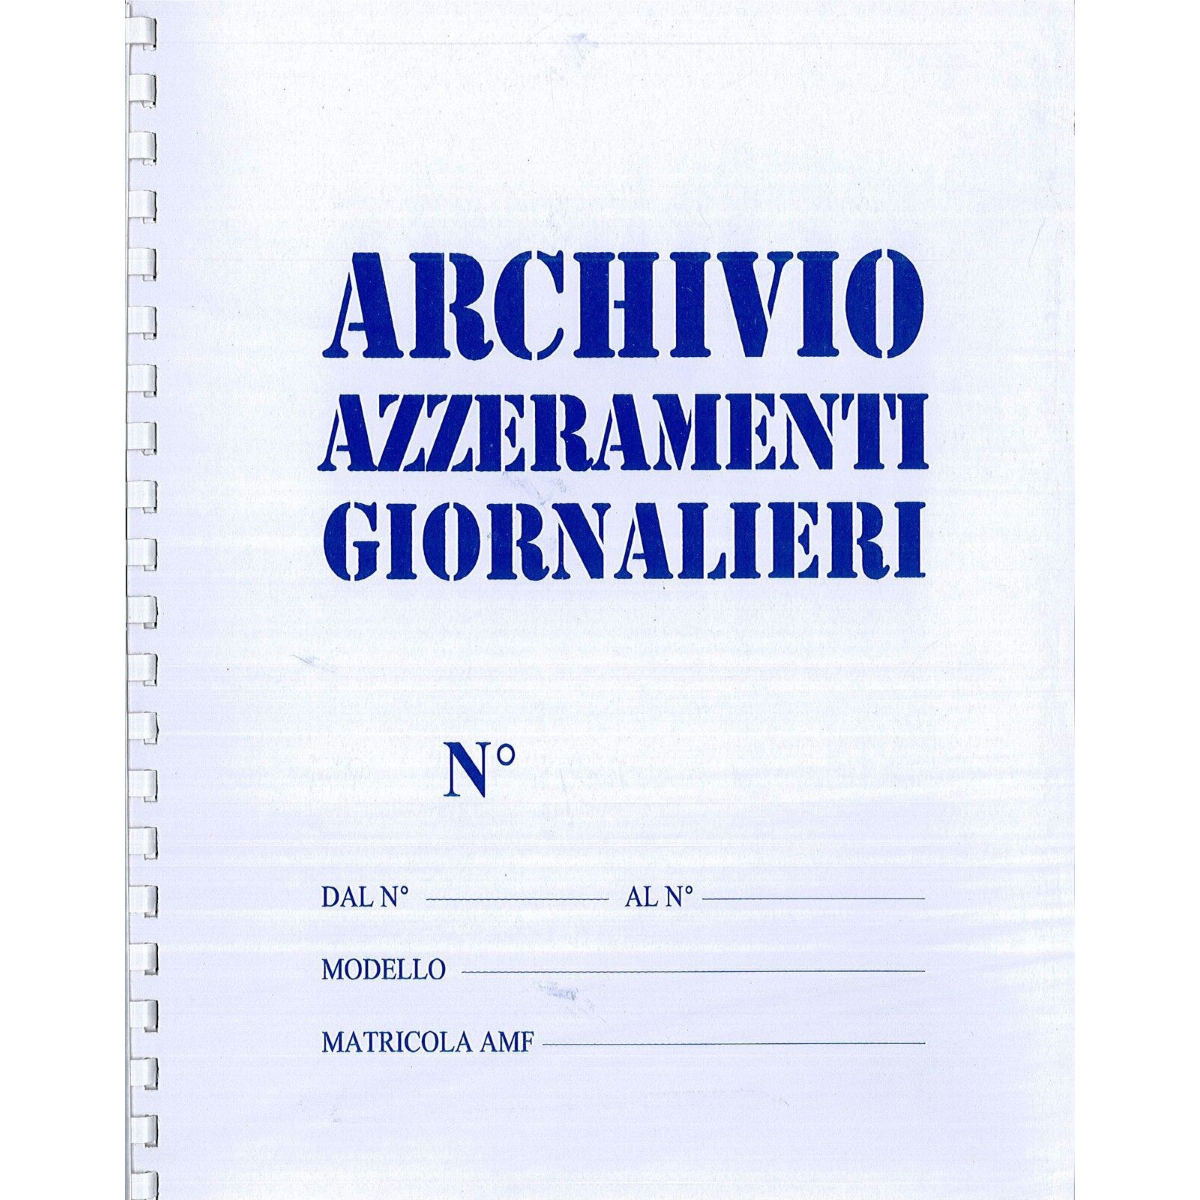 ARCHIVIO AZZERAMENTI GIORNALIERI (Cod. 7533SE000)